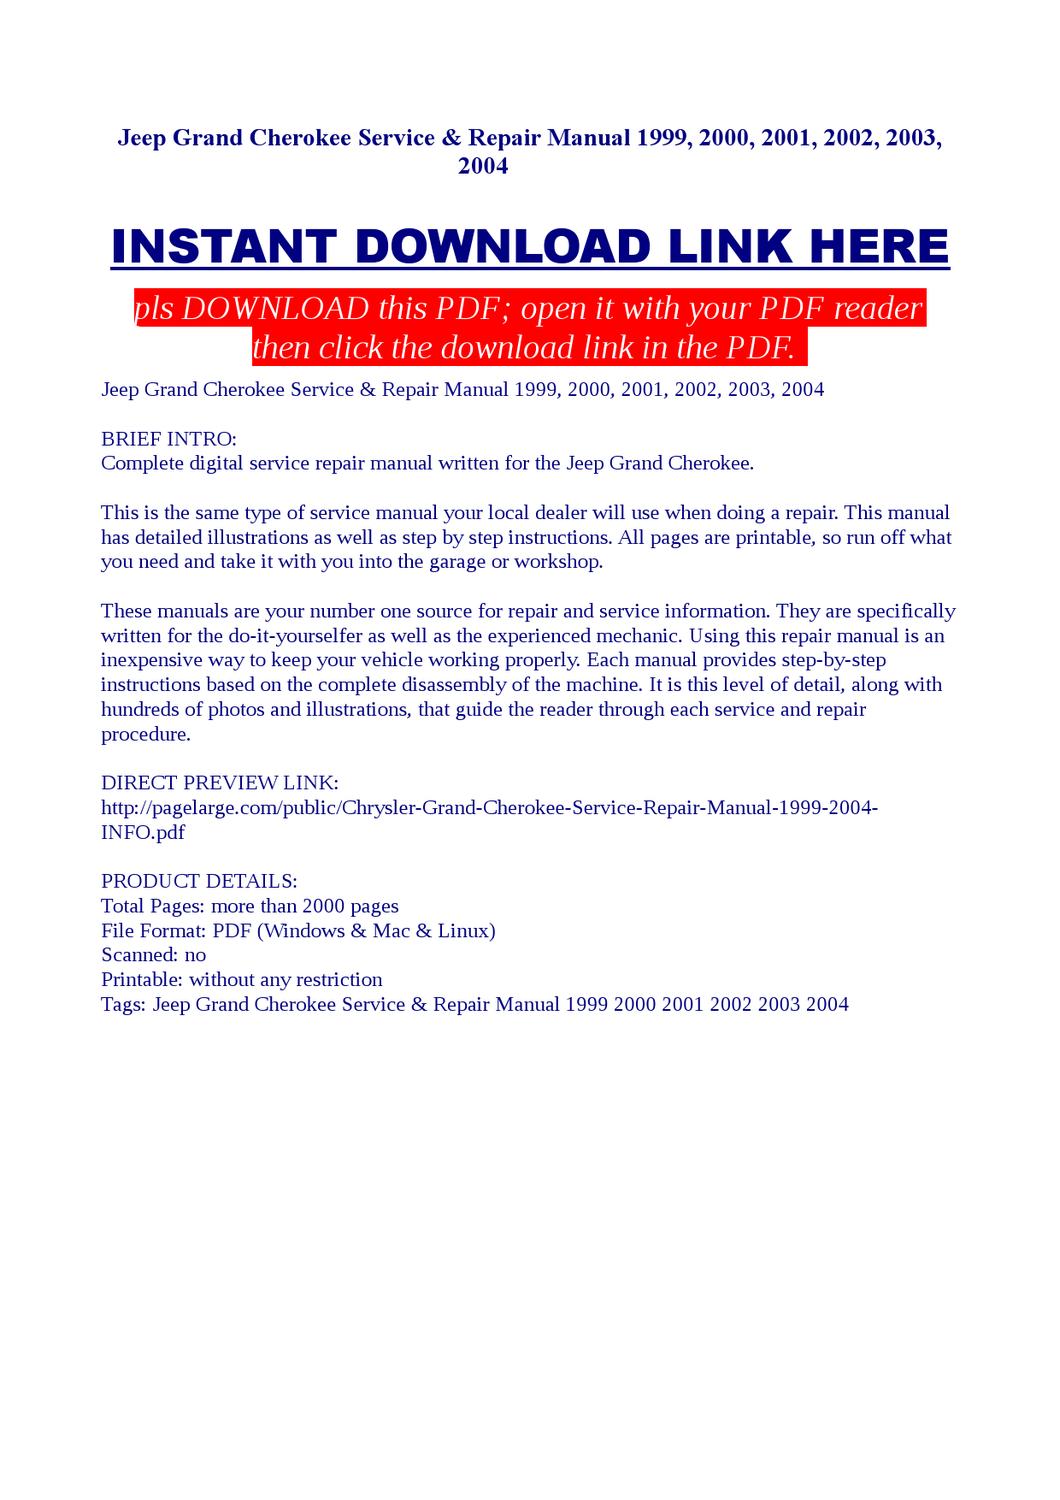 2004 grand cherokee service manual download honda